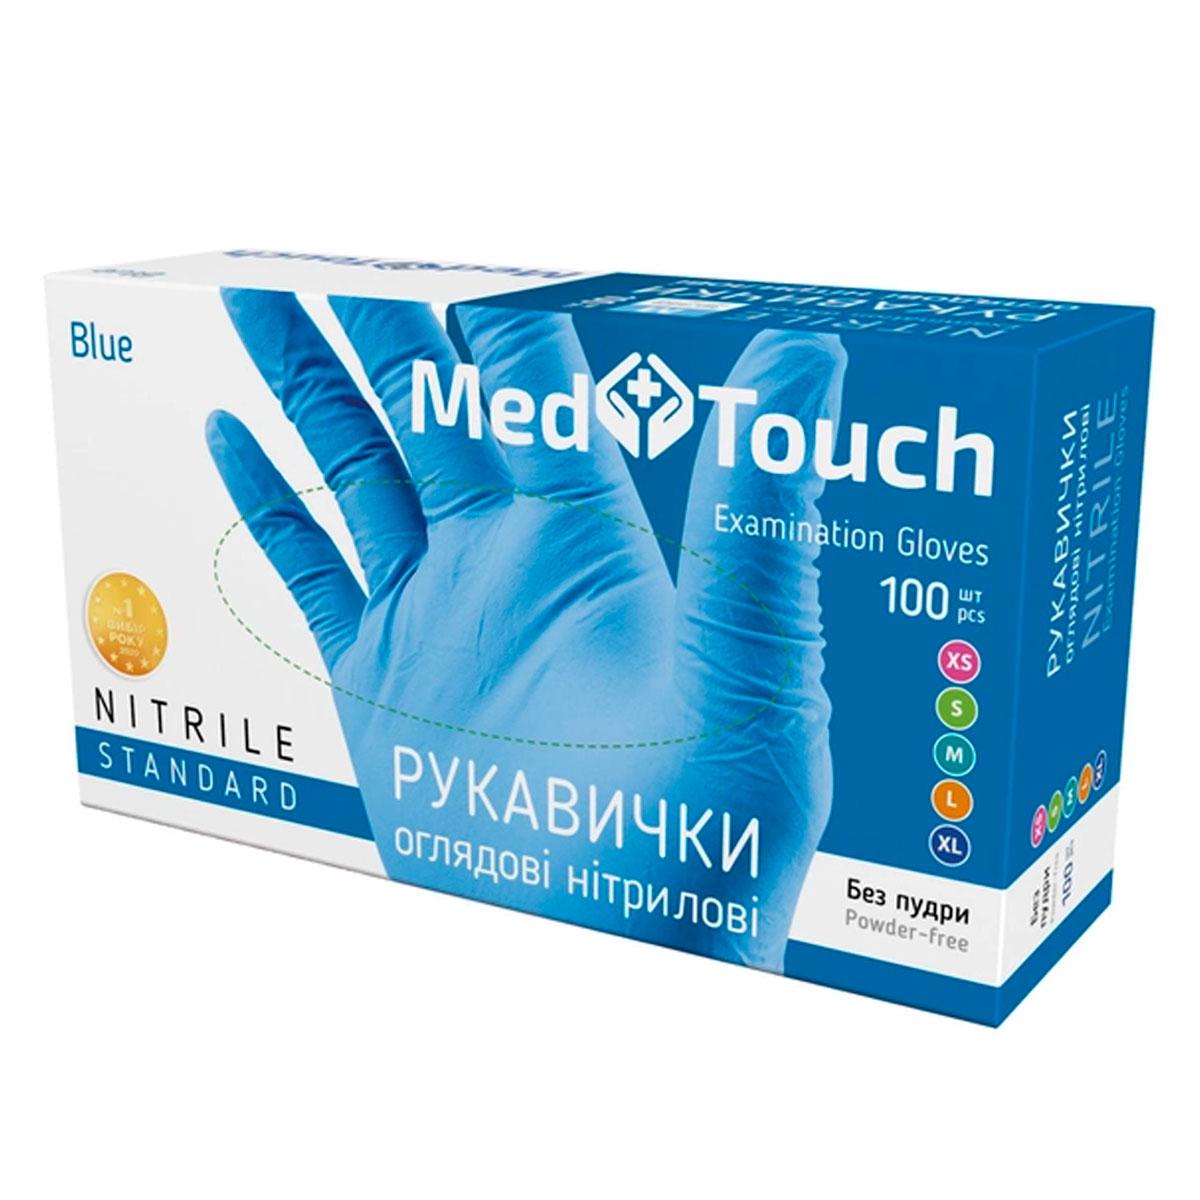 Нітрилові рукавички MedTouch без пудры синие XS, 100 шт